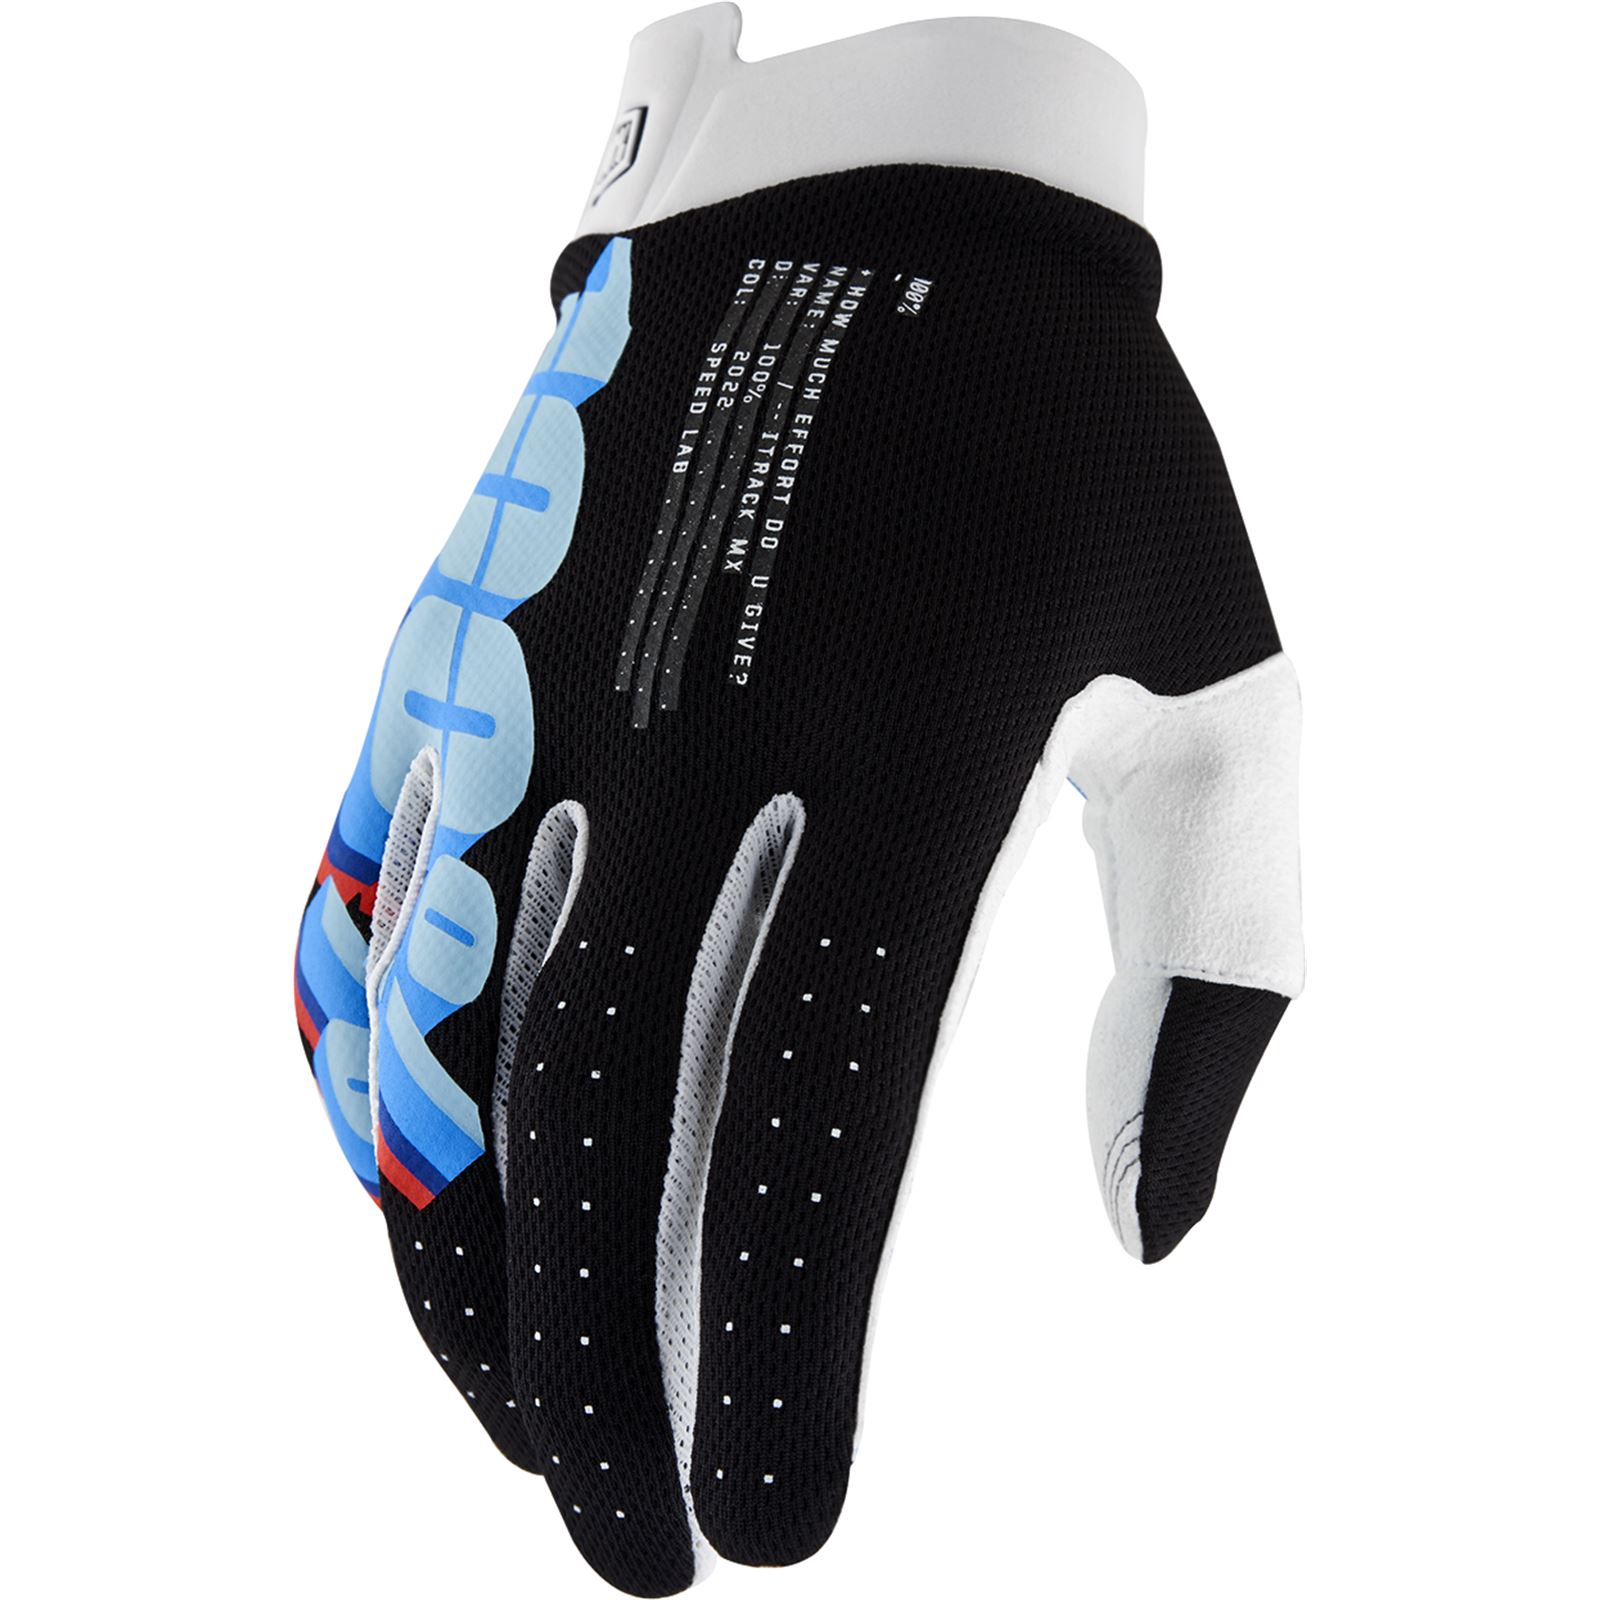 100% iTrack Gloves - System Black - Large